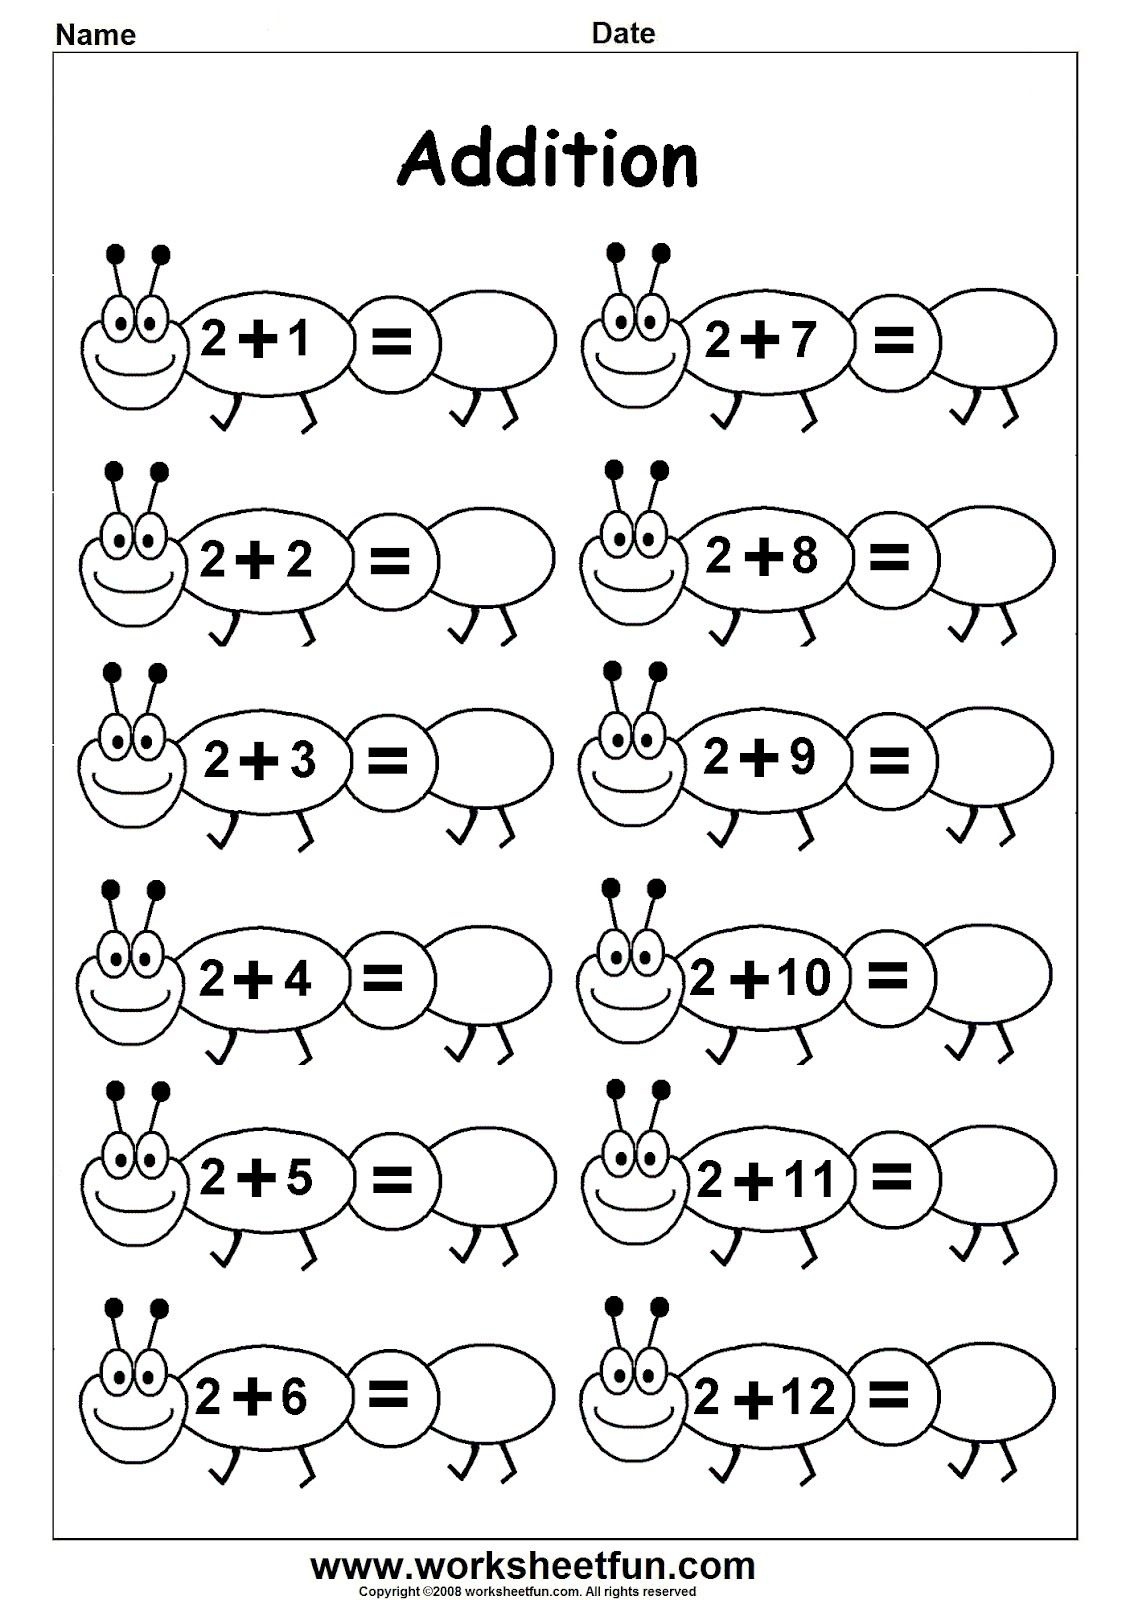 Worksheetfun - Free Printable Worksheets | Ethan School - Free Printable Kinder Math Worksheets